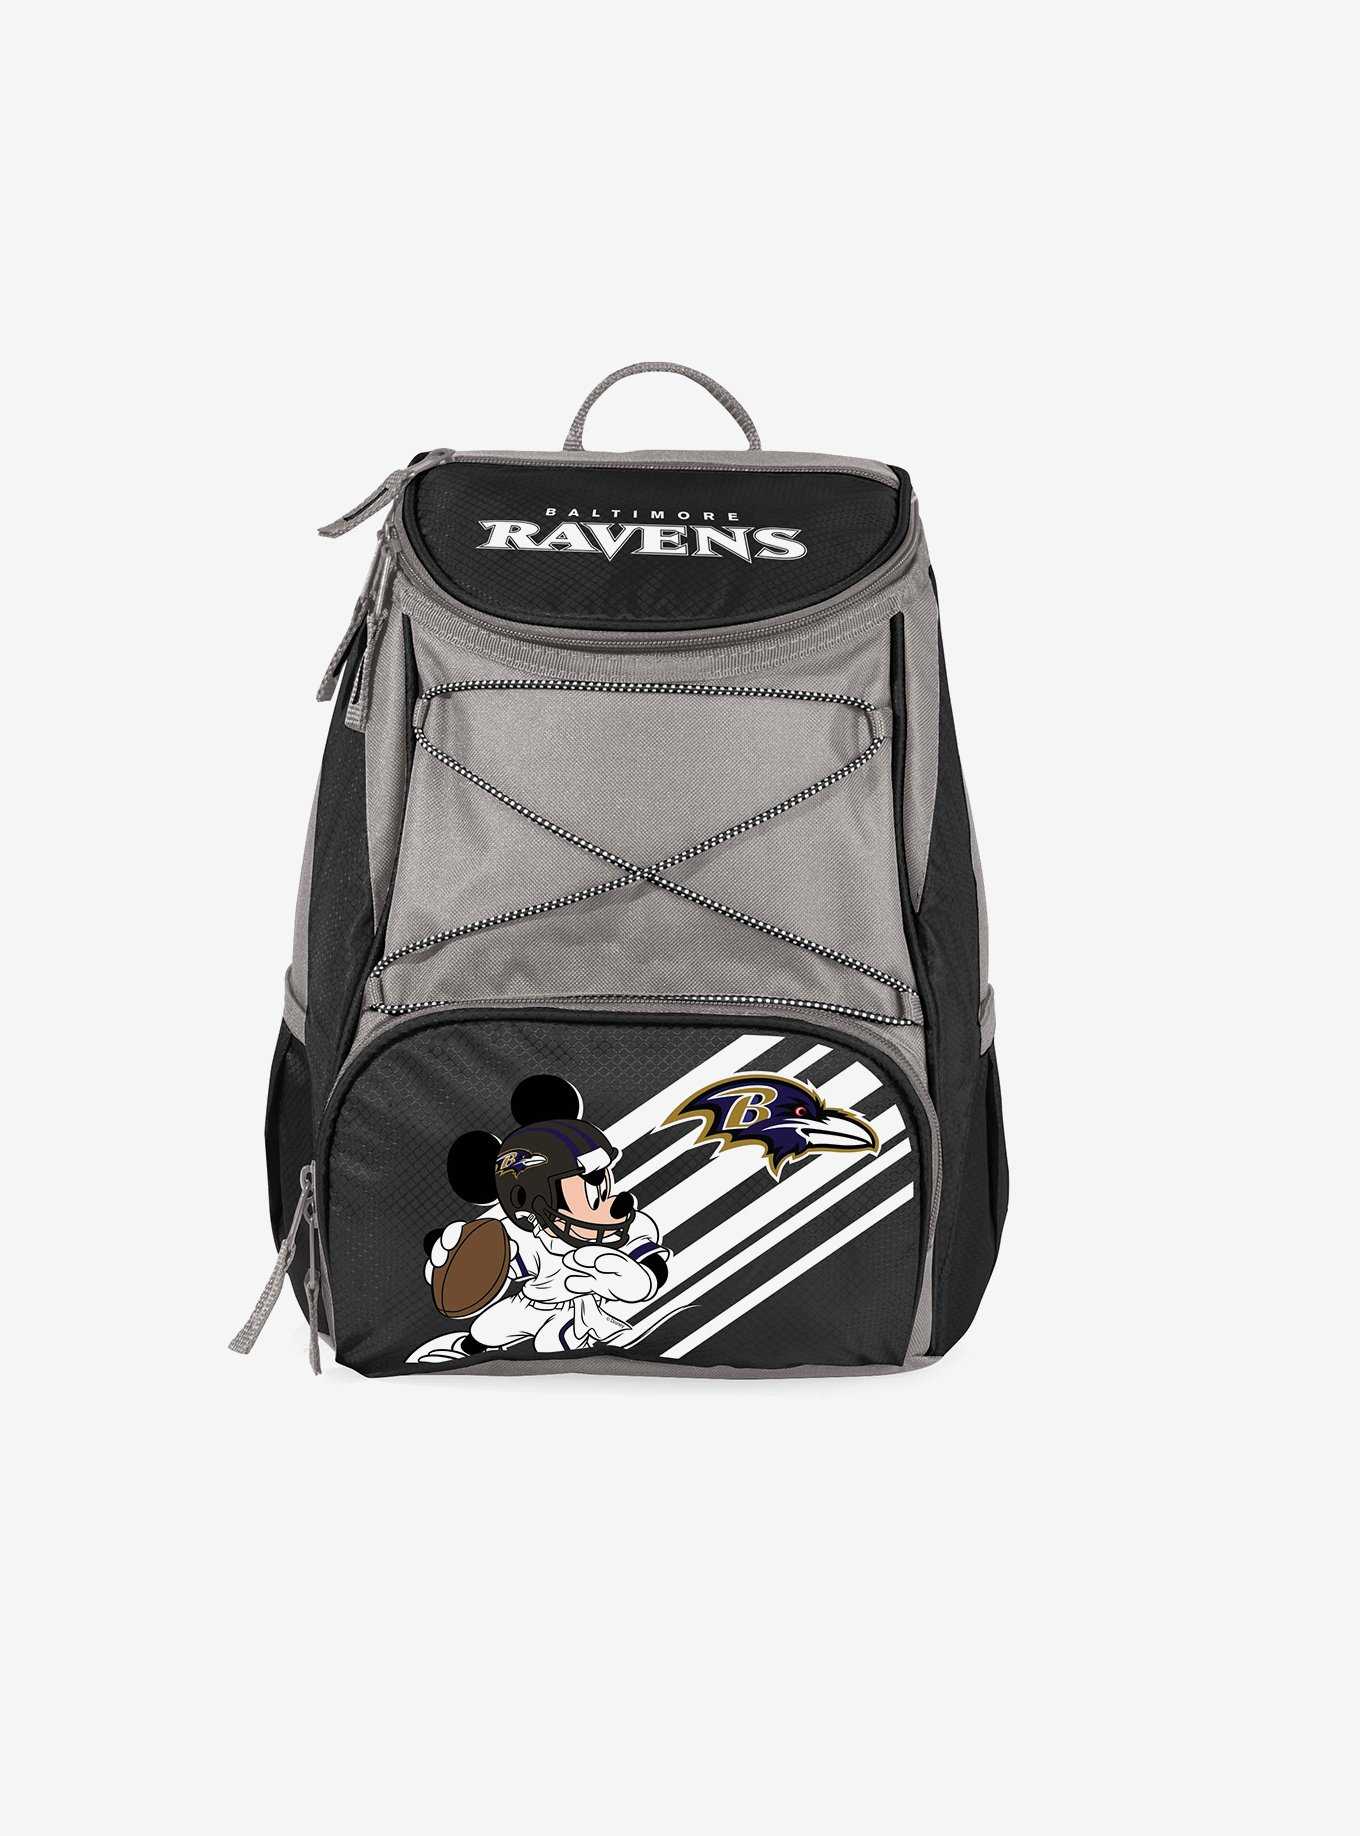 Disney Mickey Mouse NFL Baltimore Ravens Cooler Backpack, , hi-res